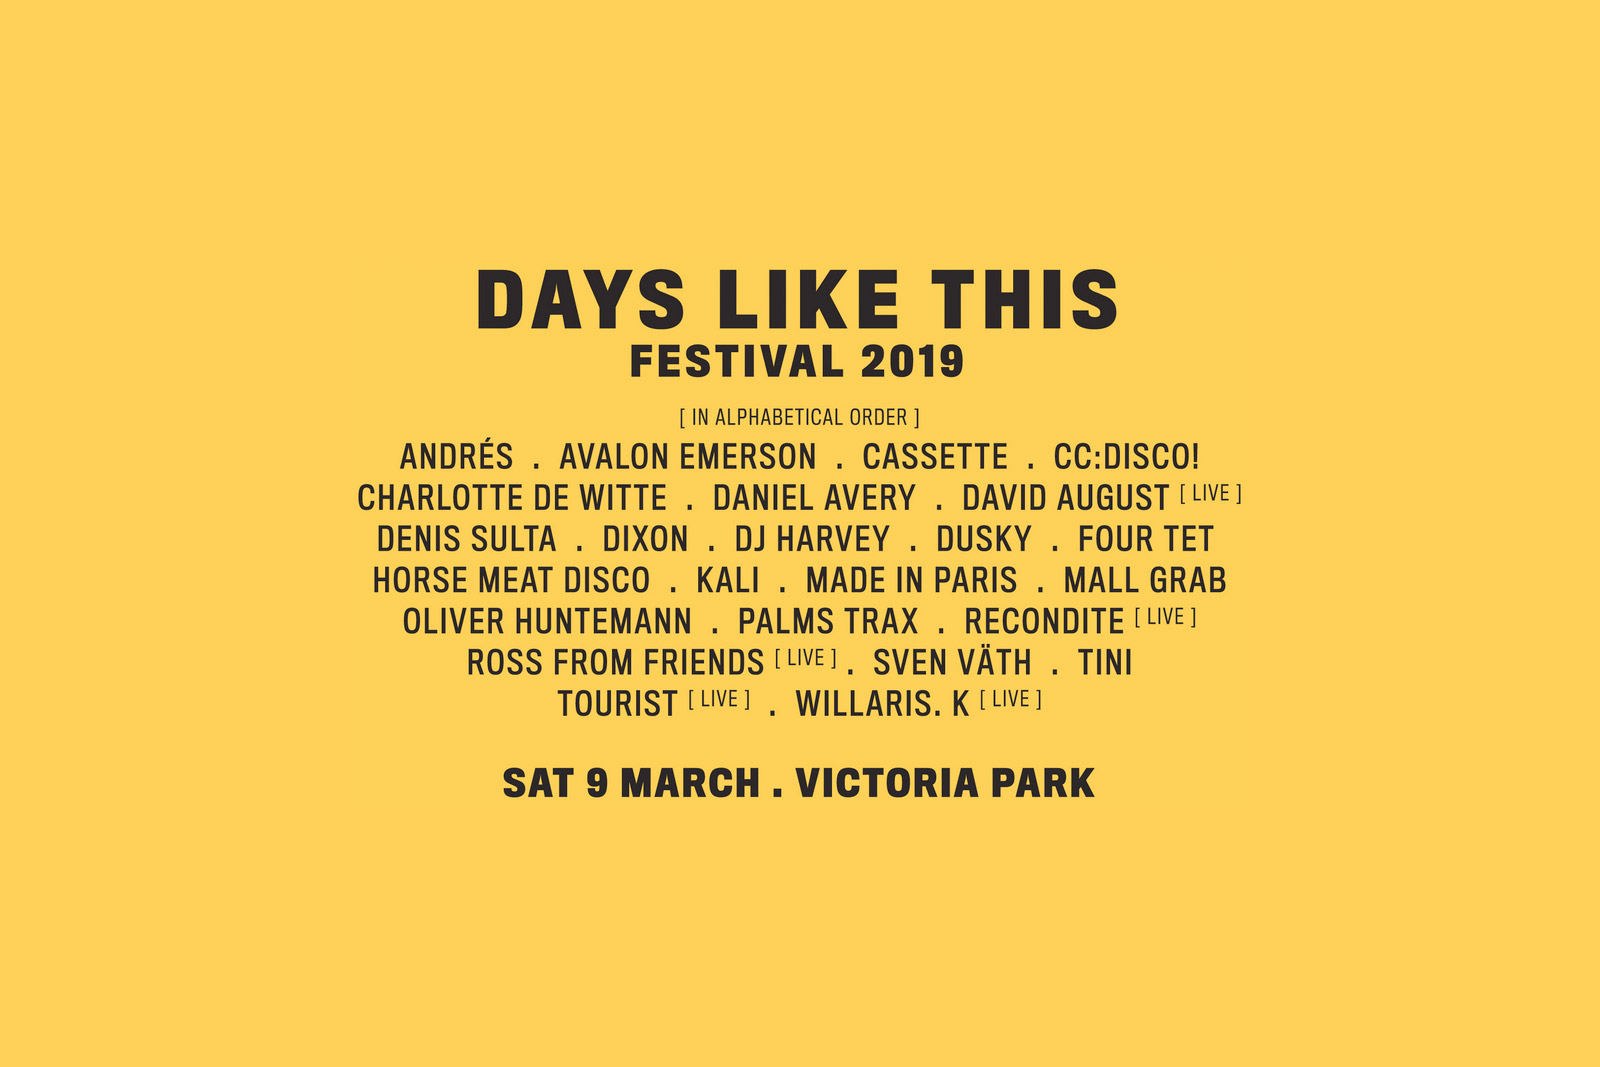 days-like-this-festival-2019-lineup-oz-edm